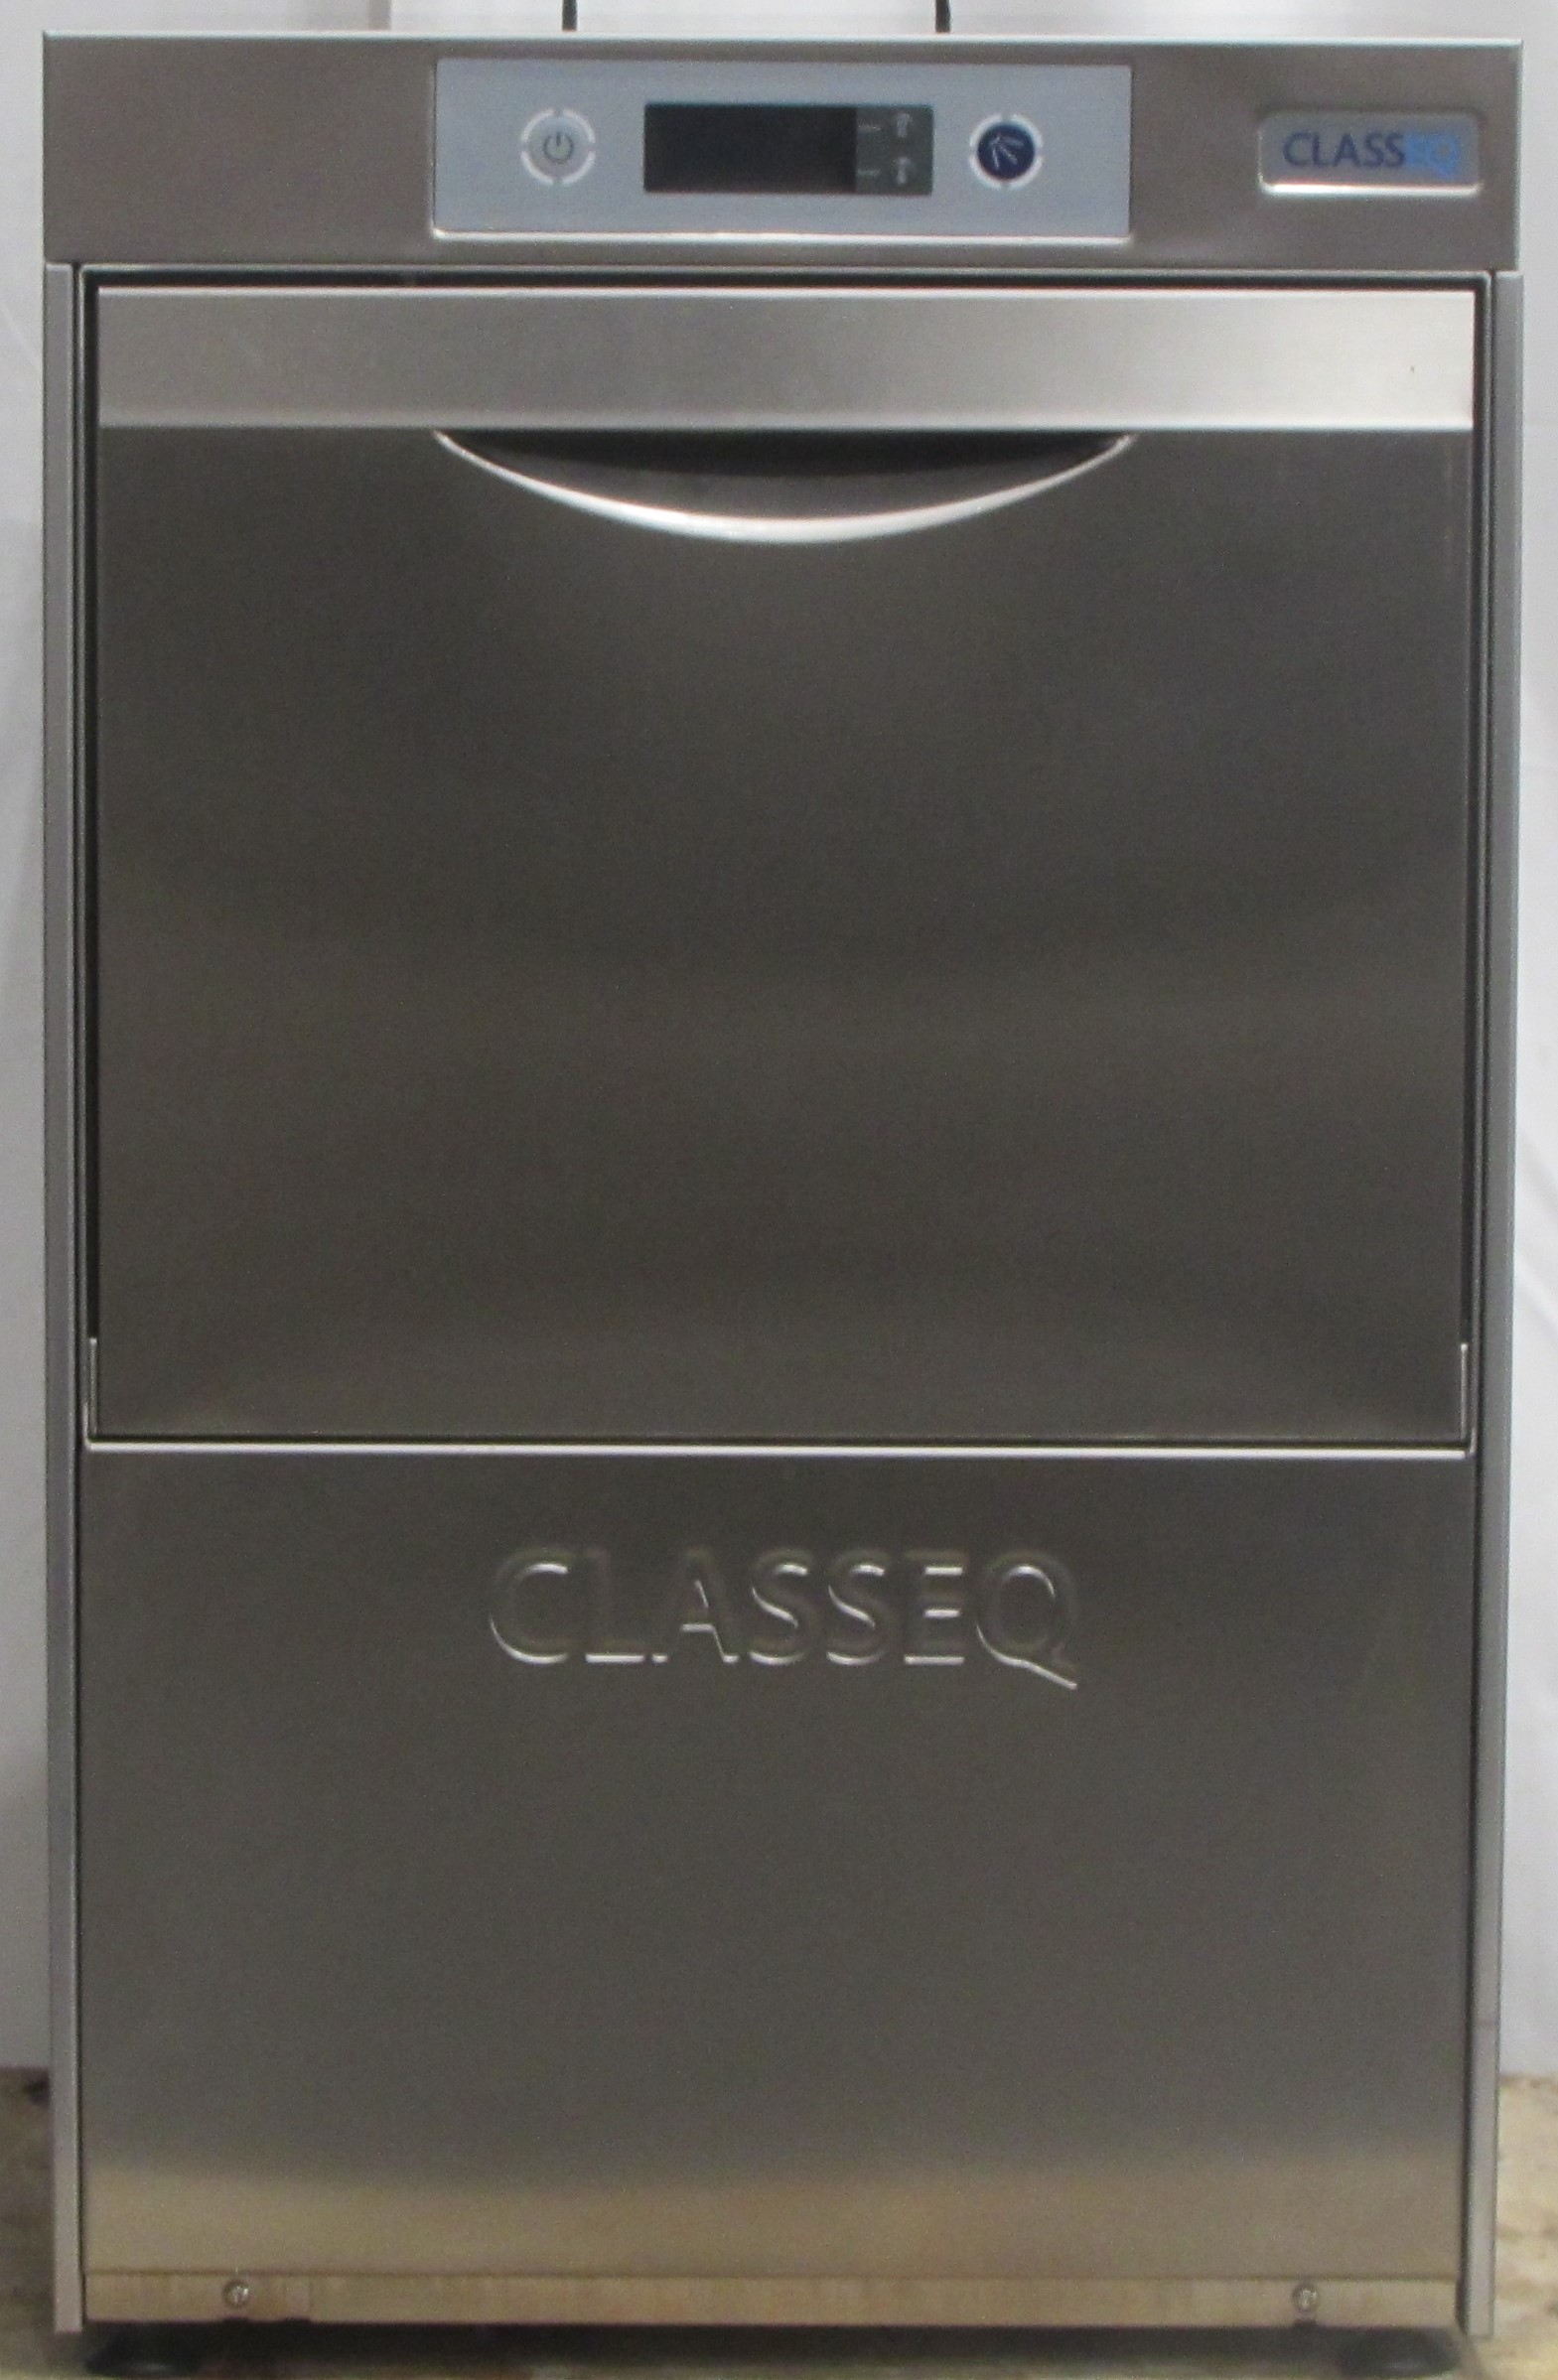 CLASSEQ G400DUO RBP Gläserspülmaschine 2022